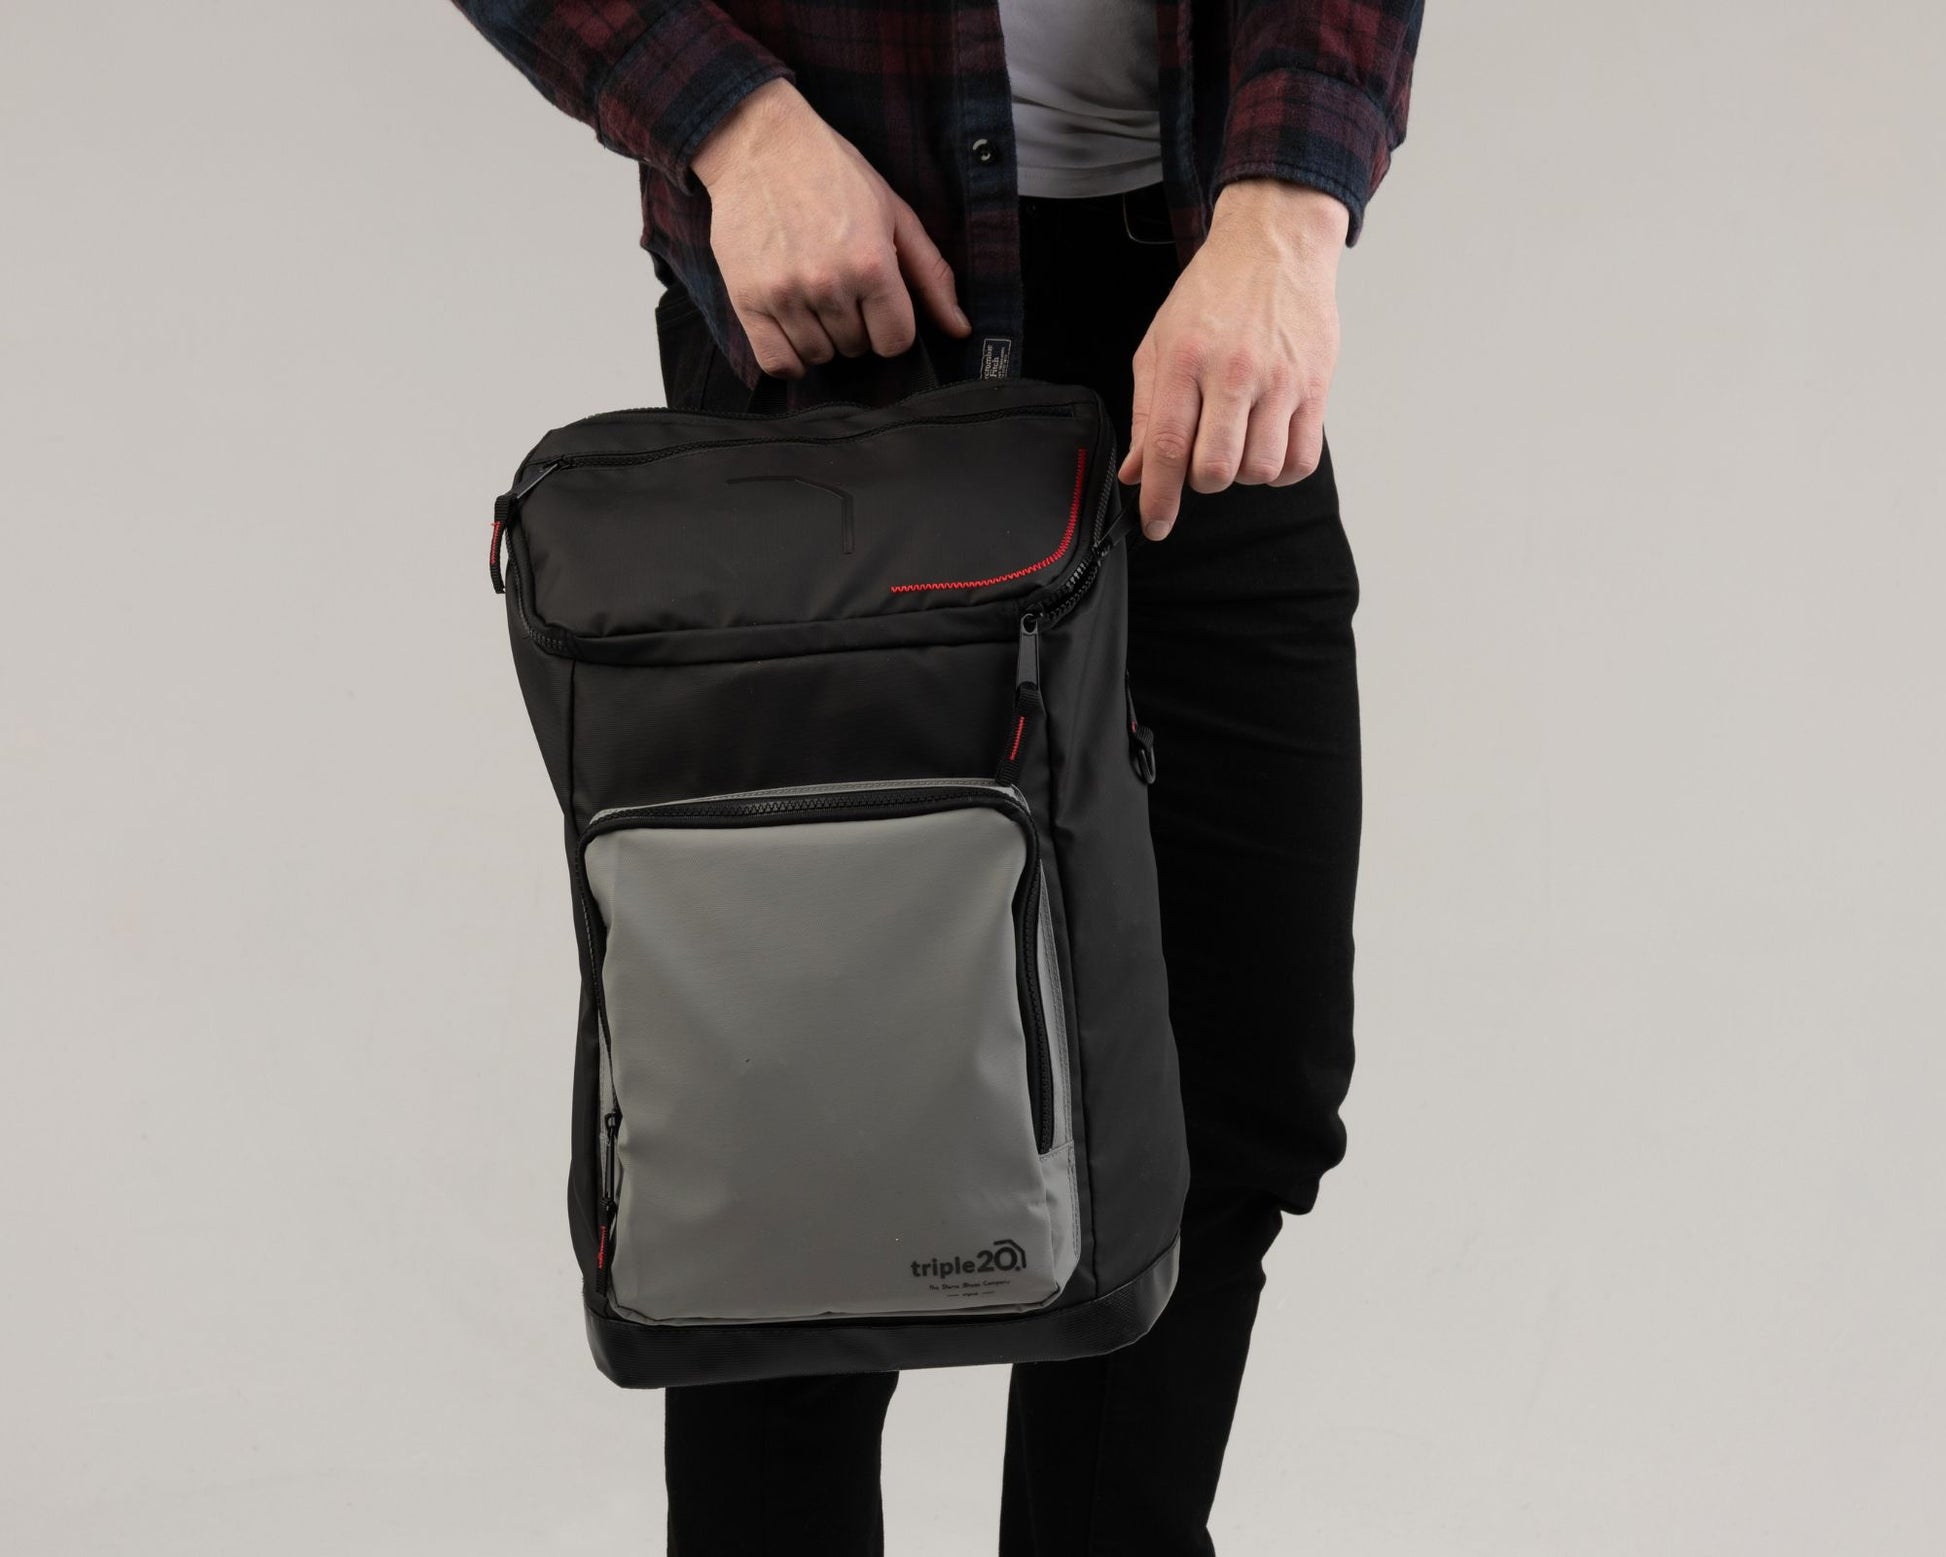 Auf diesem Bild hält ein Mann einen Spezialrucksack für Dartschuhe in den Händen. In diesem schwarz-grauen Modell lassen sich neben einem Paar Dartschuhe auch weitere Notwendigkeiten des Alltags verstauen. Auf der hellgrauen Fronttasche befindet sich das Logo des Herstellers triple20.